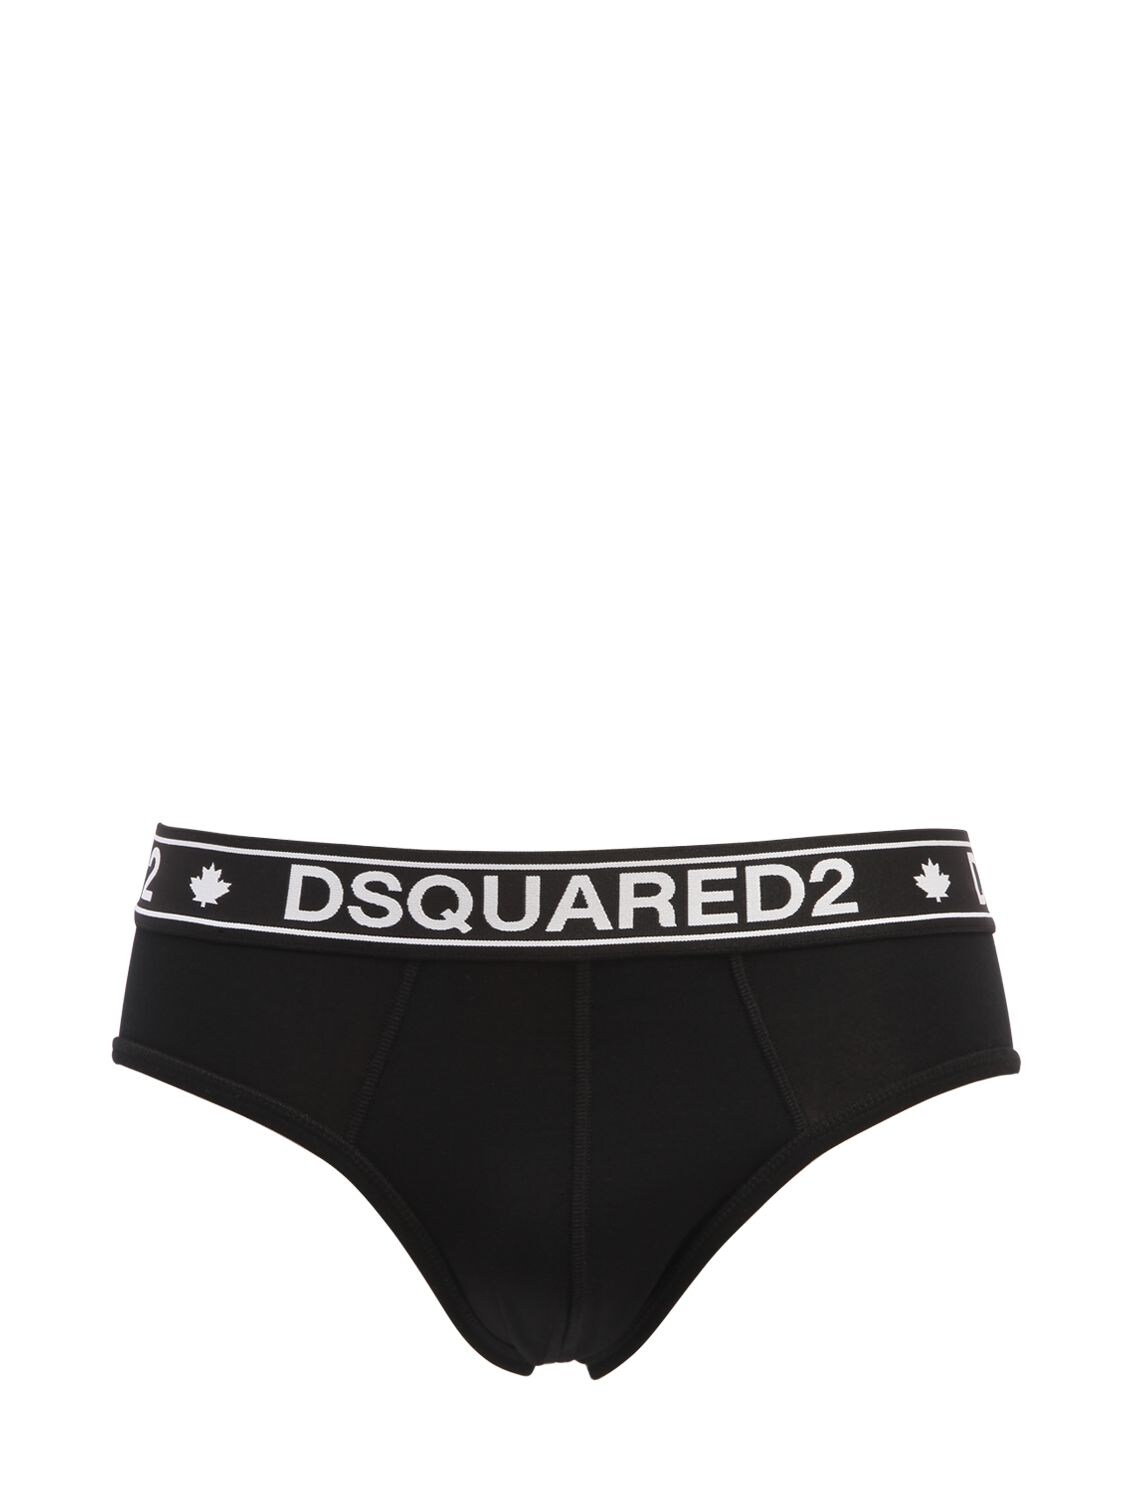 Dsquared2 Underwear Logo Band Briefs In Black